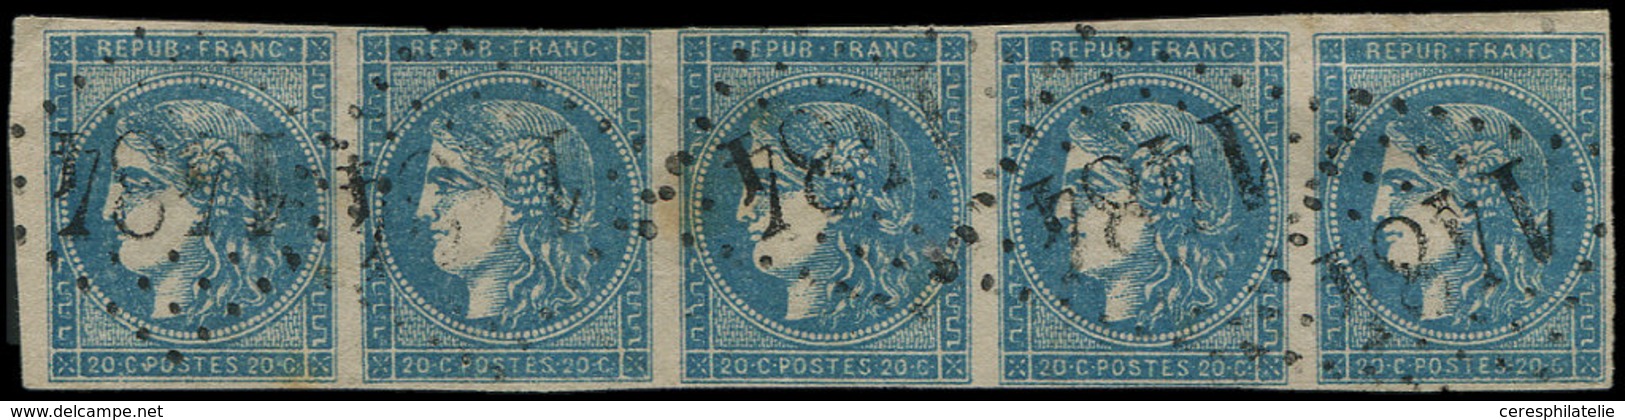 EMISSION DE BORDEAUX - 45C  20c. Bleu, T II R III, BANDE De 5 Obl. GC 1484, Filet Effleuré S. 2e T., RR En Bande, TB, Co - 1870 Ausgabe Bordeaux